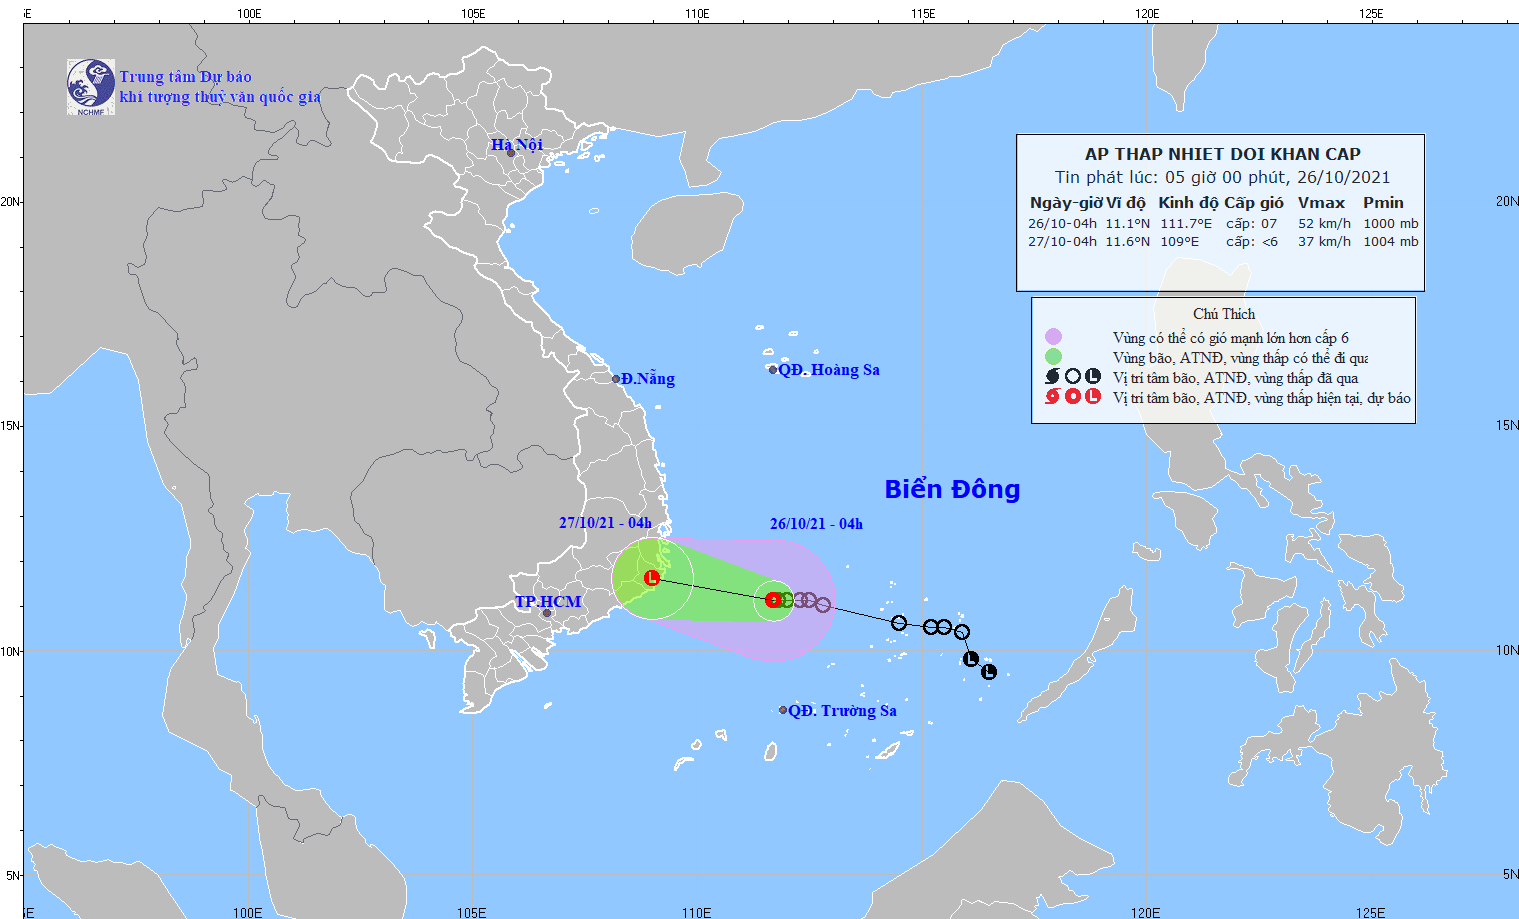 Áp thấp nhiệt đới di cách Khánh Hòa khoảng 300km, thêm một cơn bão có khả năng chuẩn bị vào biển Đông - Ảnh 1.